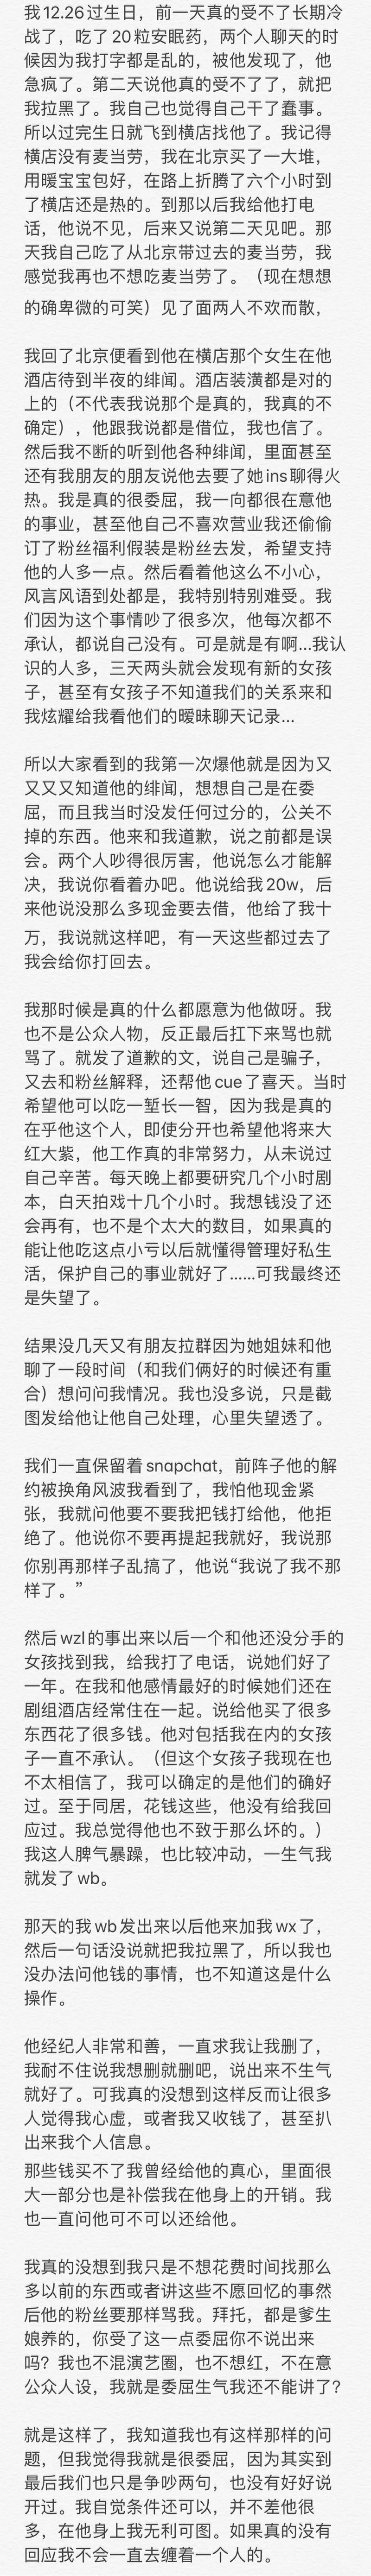 让人咂舌:4 月 24 日,屈楚萧前女友黎梵在微博上爆出:屈楚萧是字母圈